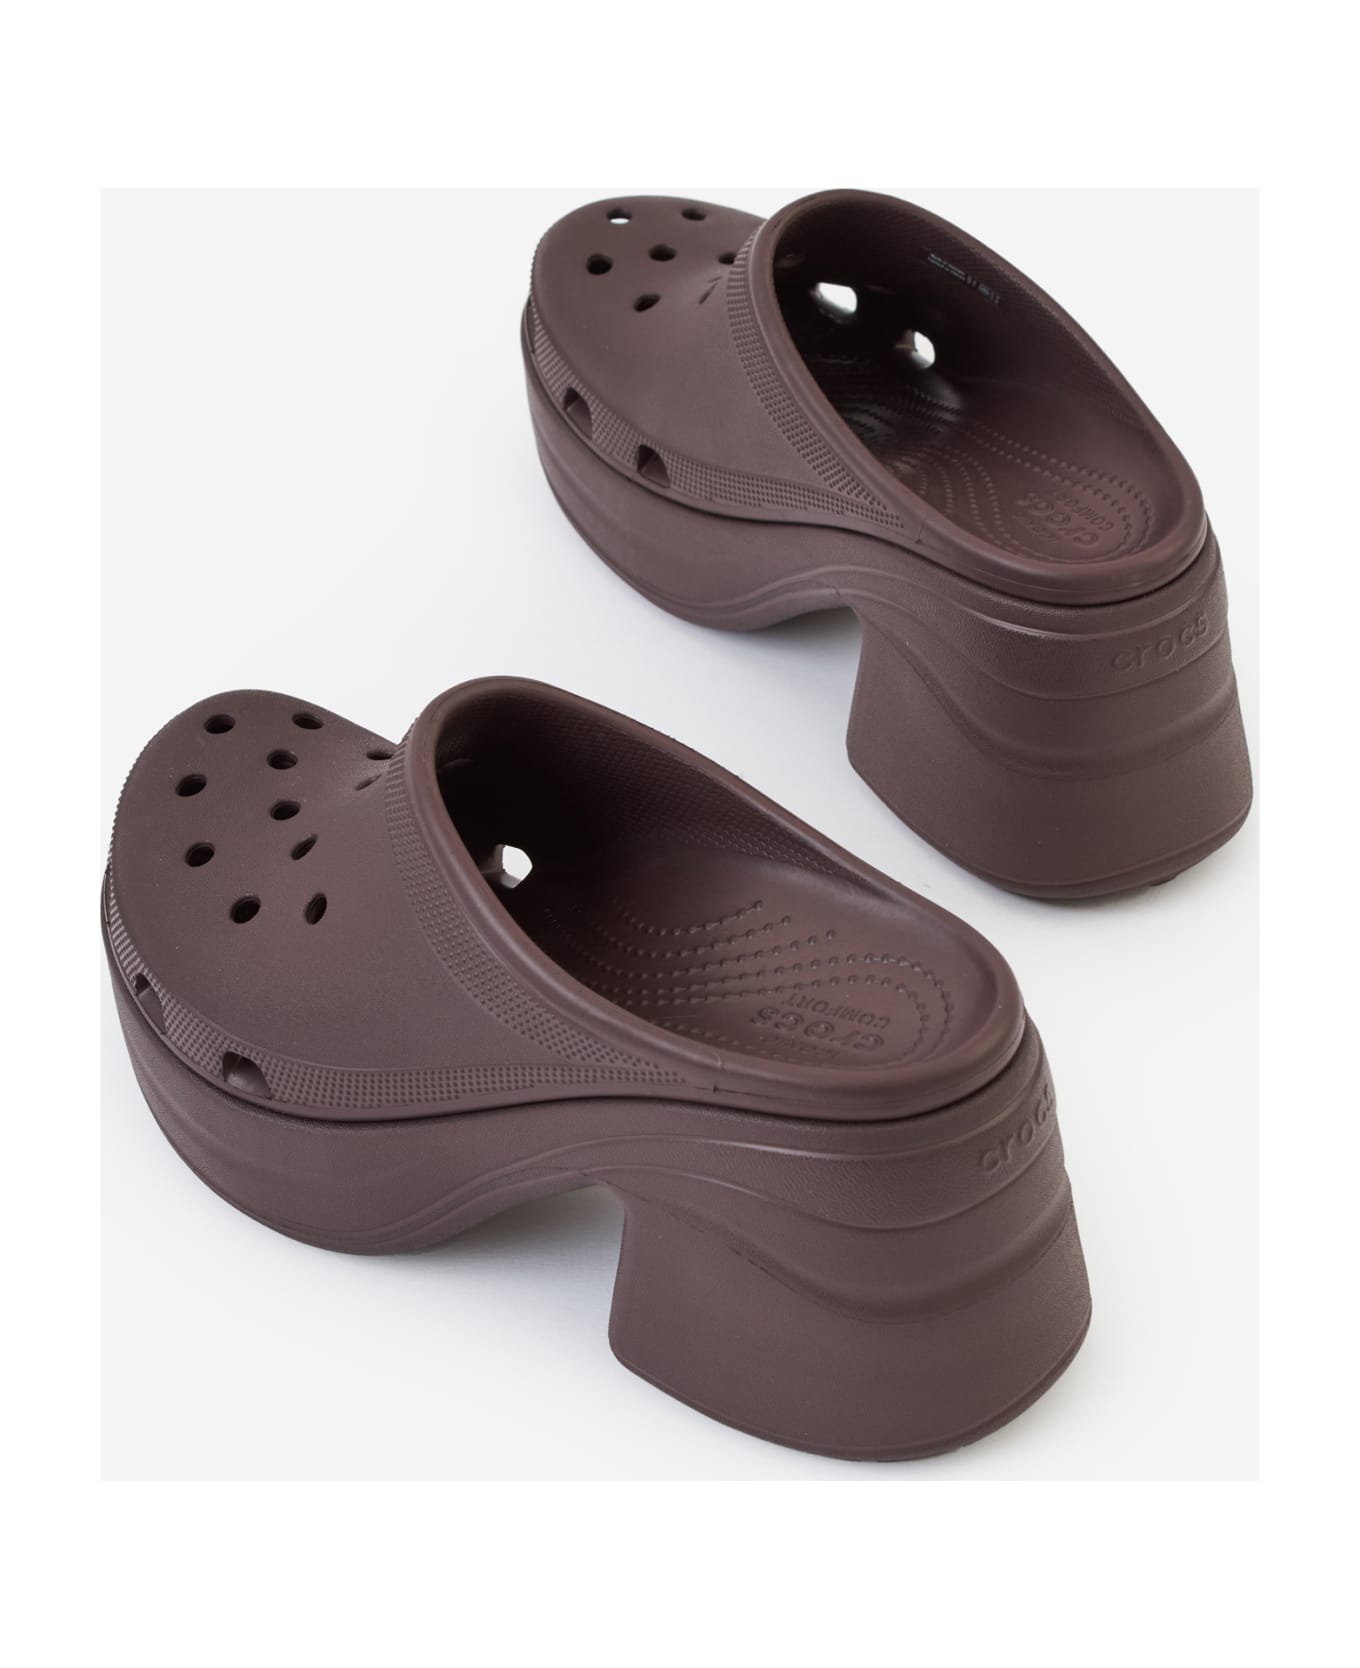 Crocs Siren Clog Sandals - Mocha